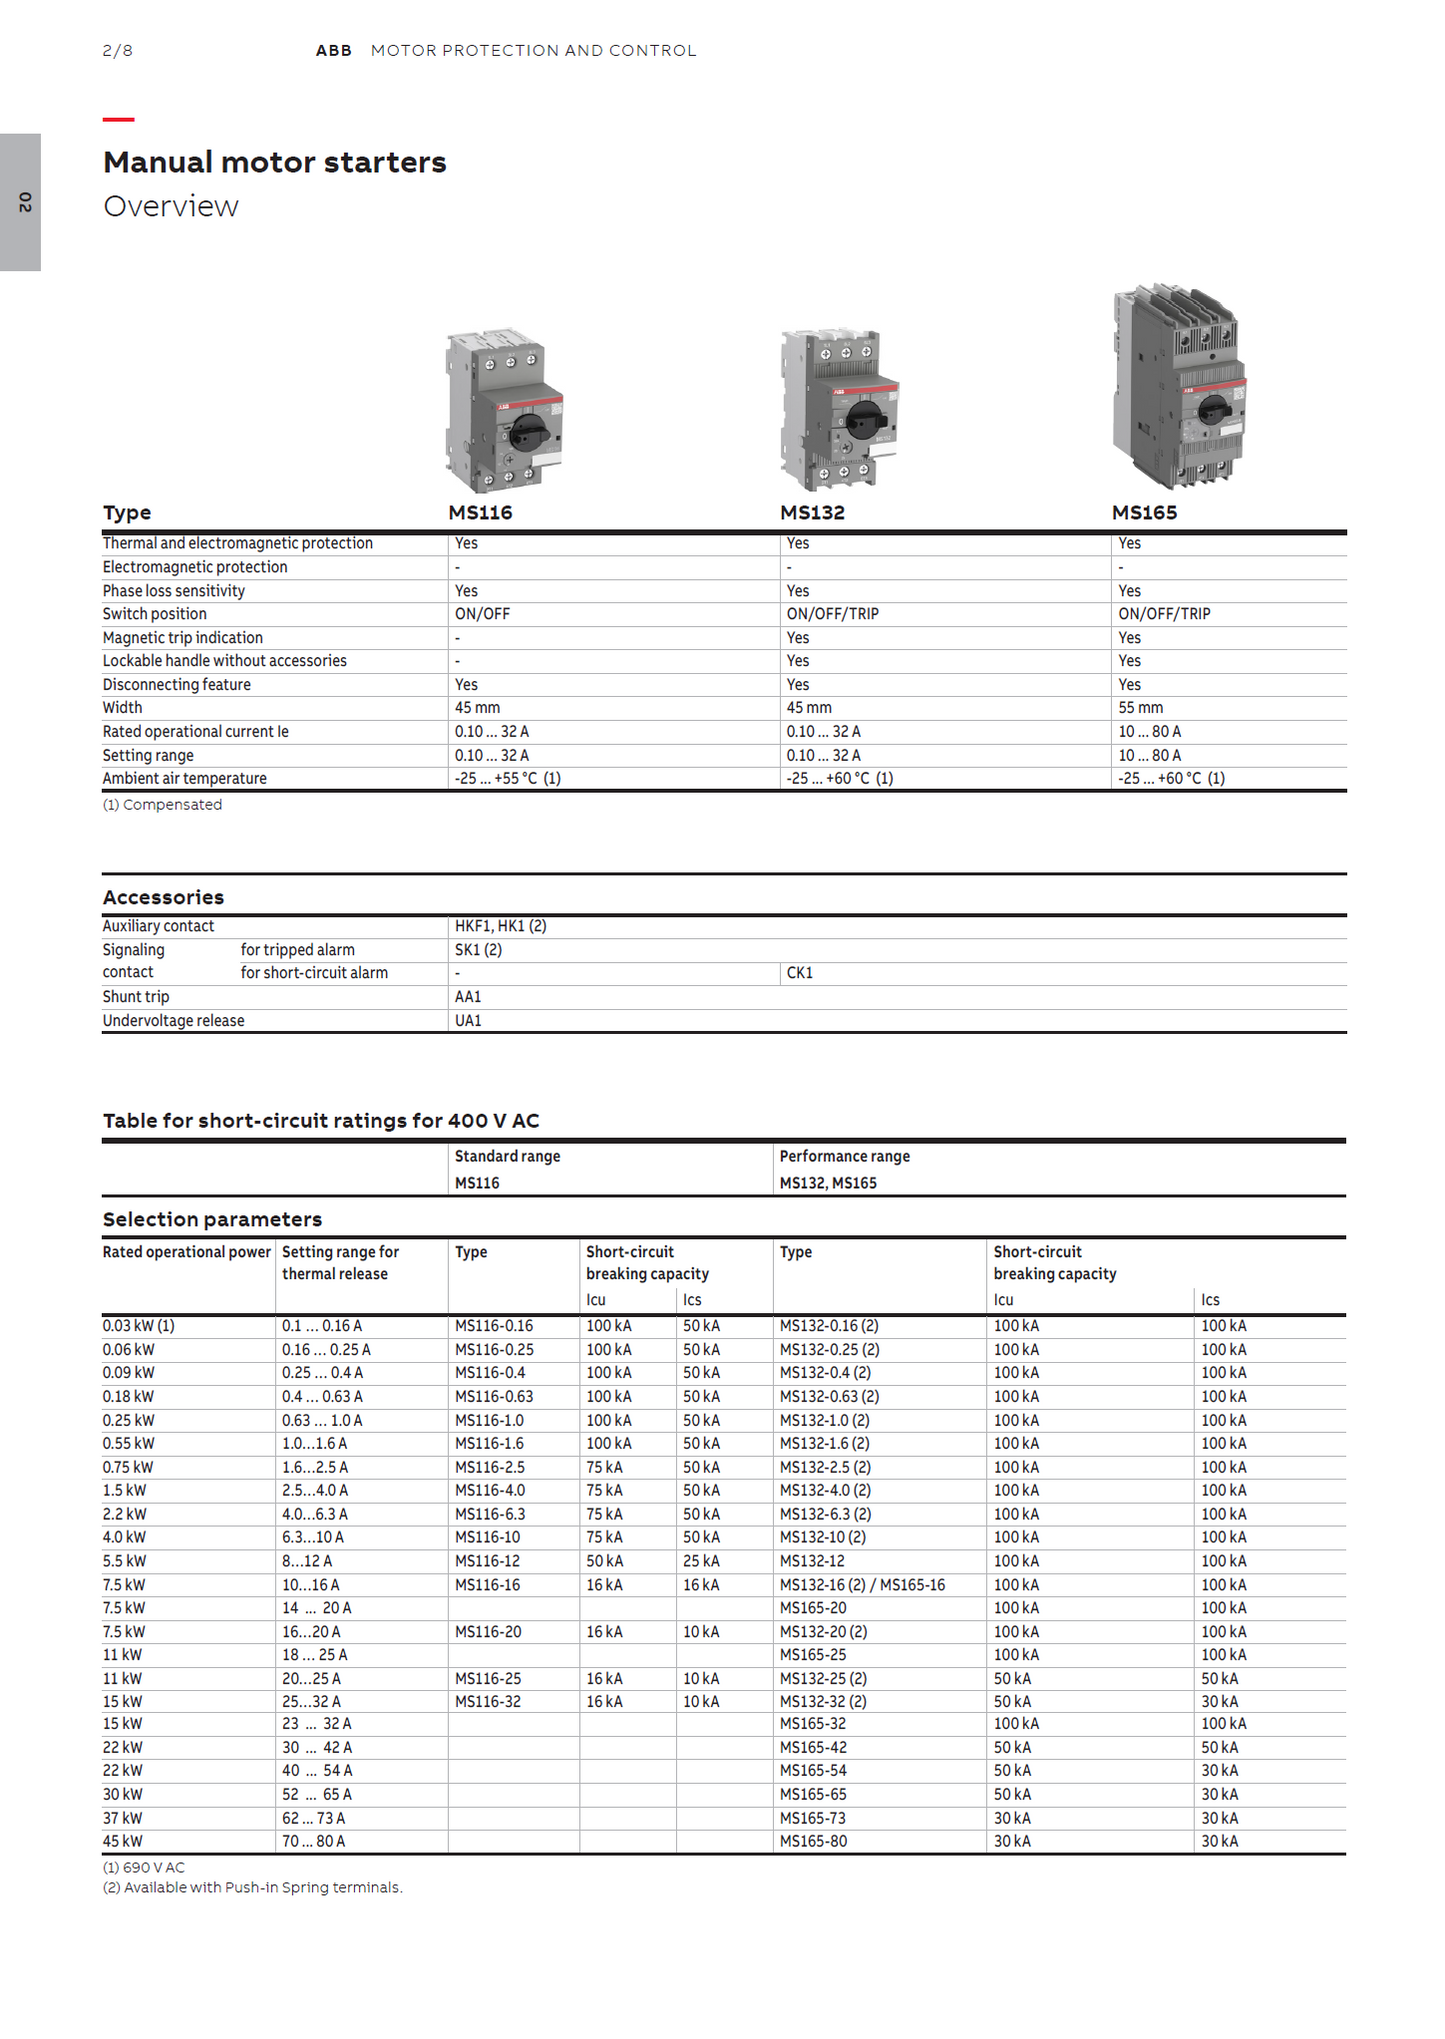 ABB Manual Motor Starter MS116-1.0 1SAM250000R1005